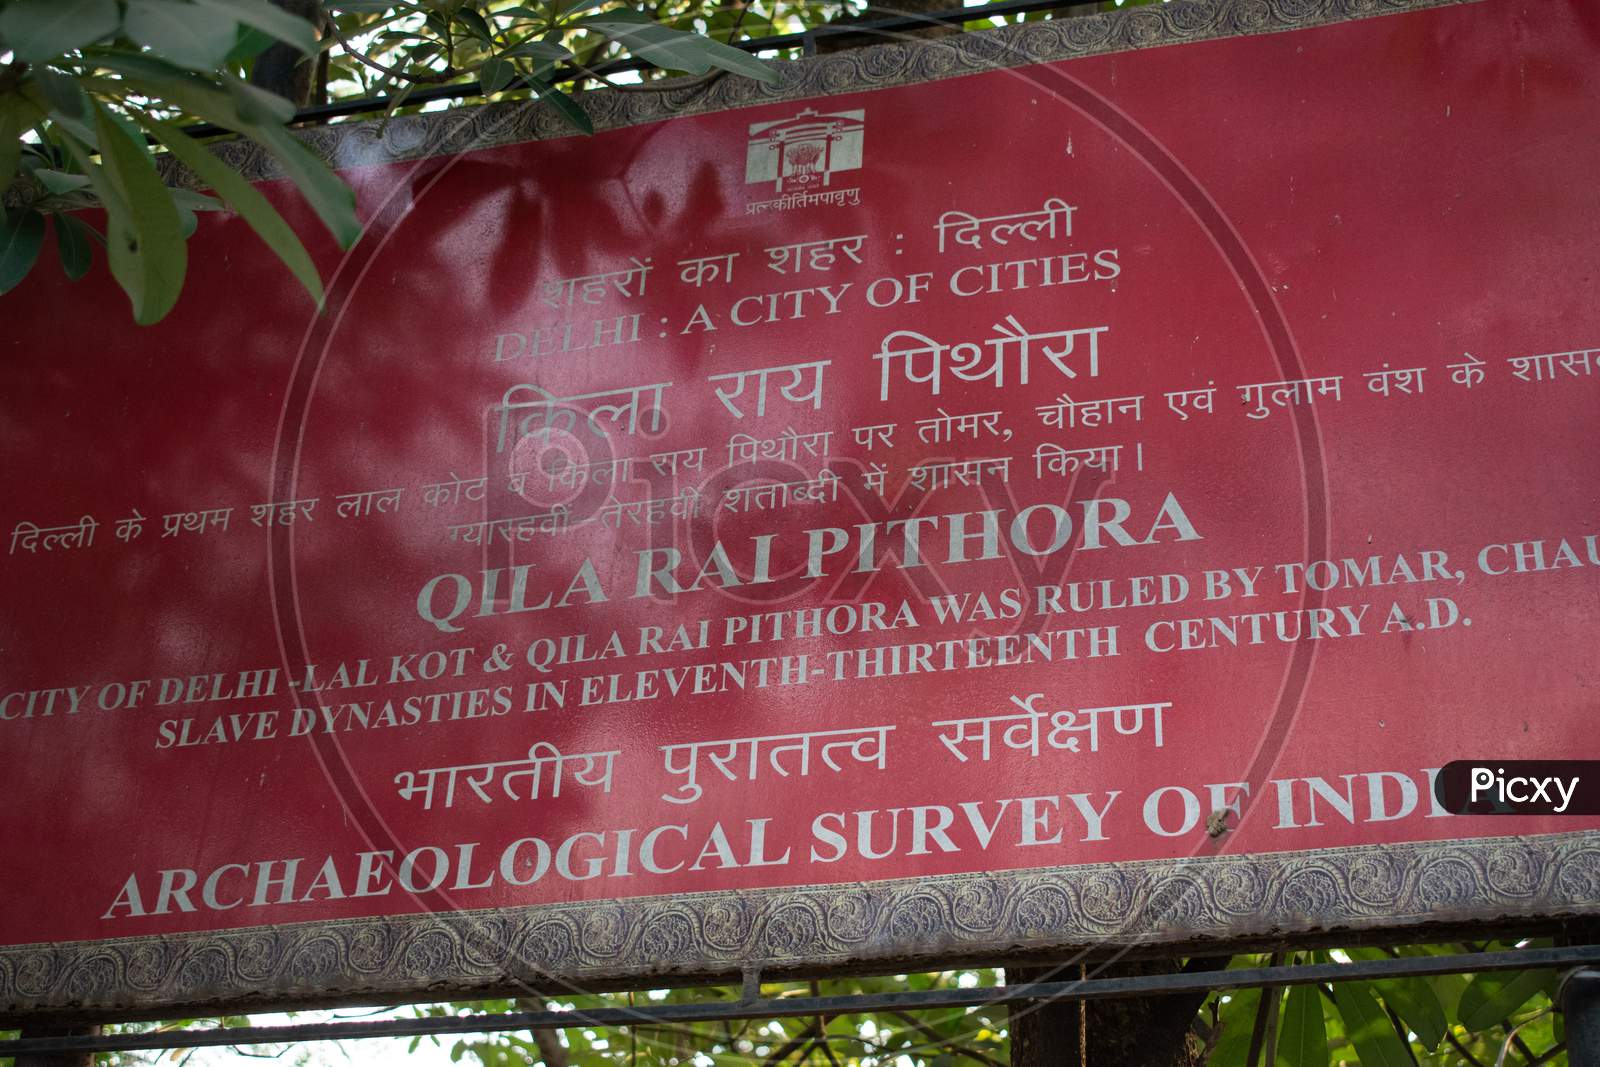 Qila Rai Pithora